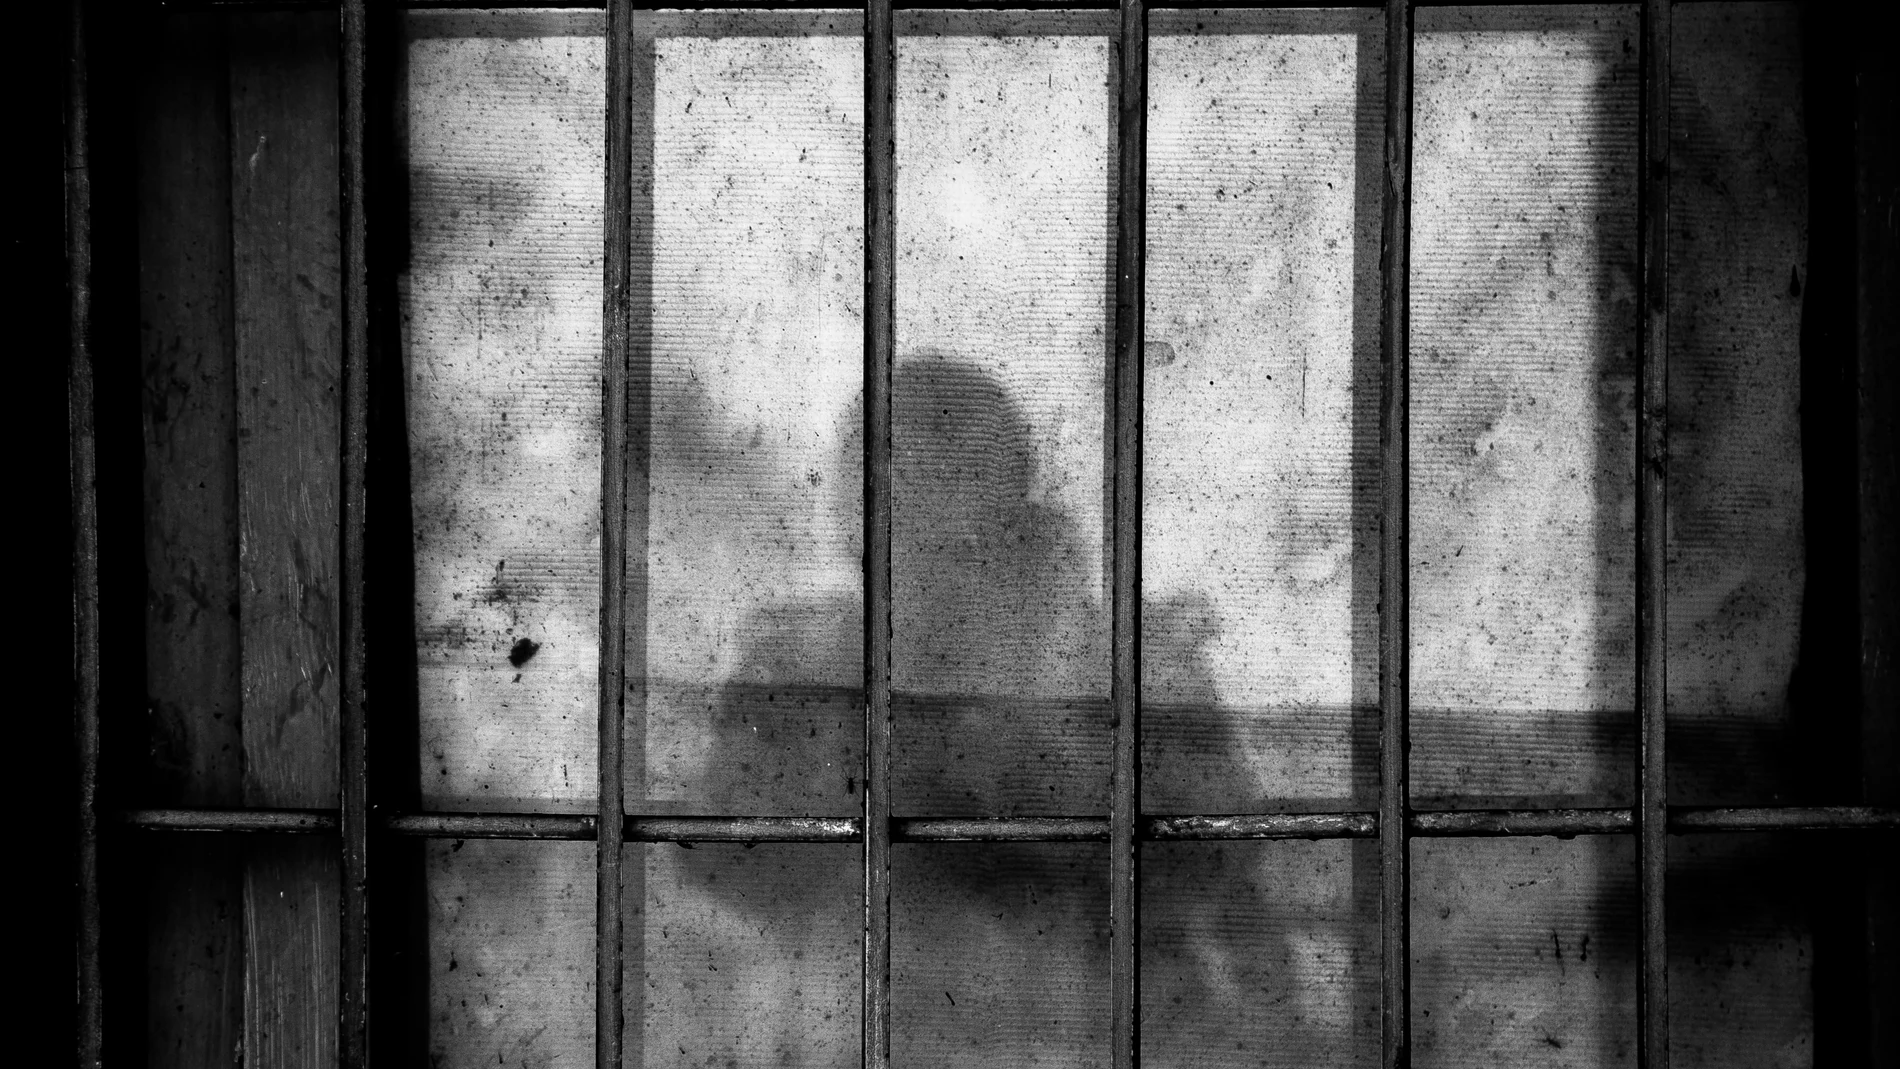 Imagen de rejas en la cárcel